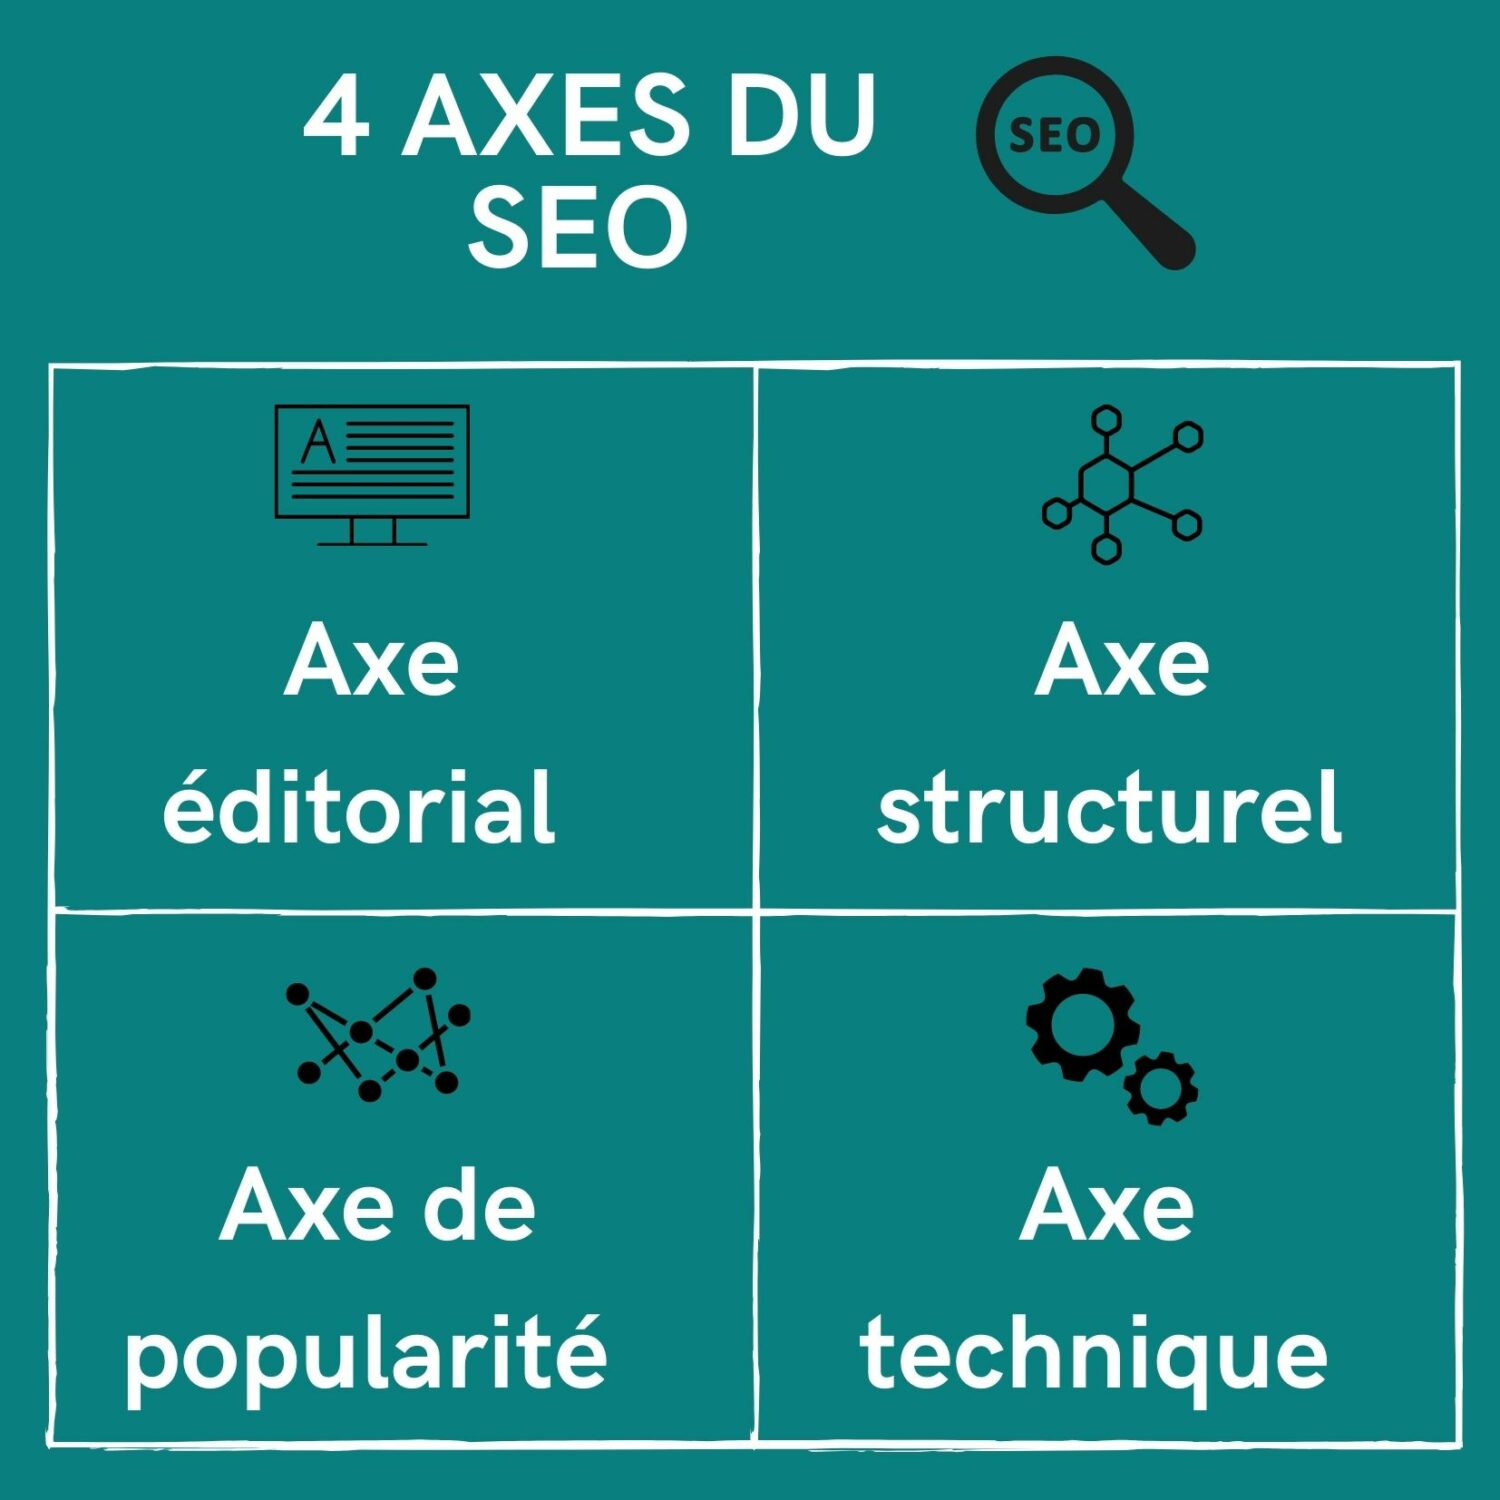 4 axes du SEO :
axe éditorial, technique, structurel, popularité 
